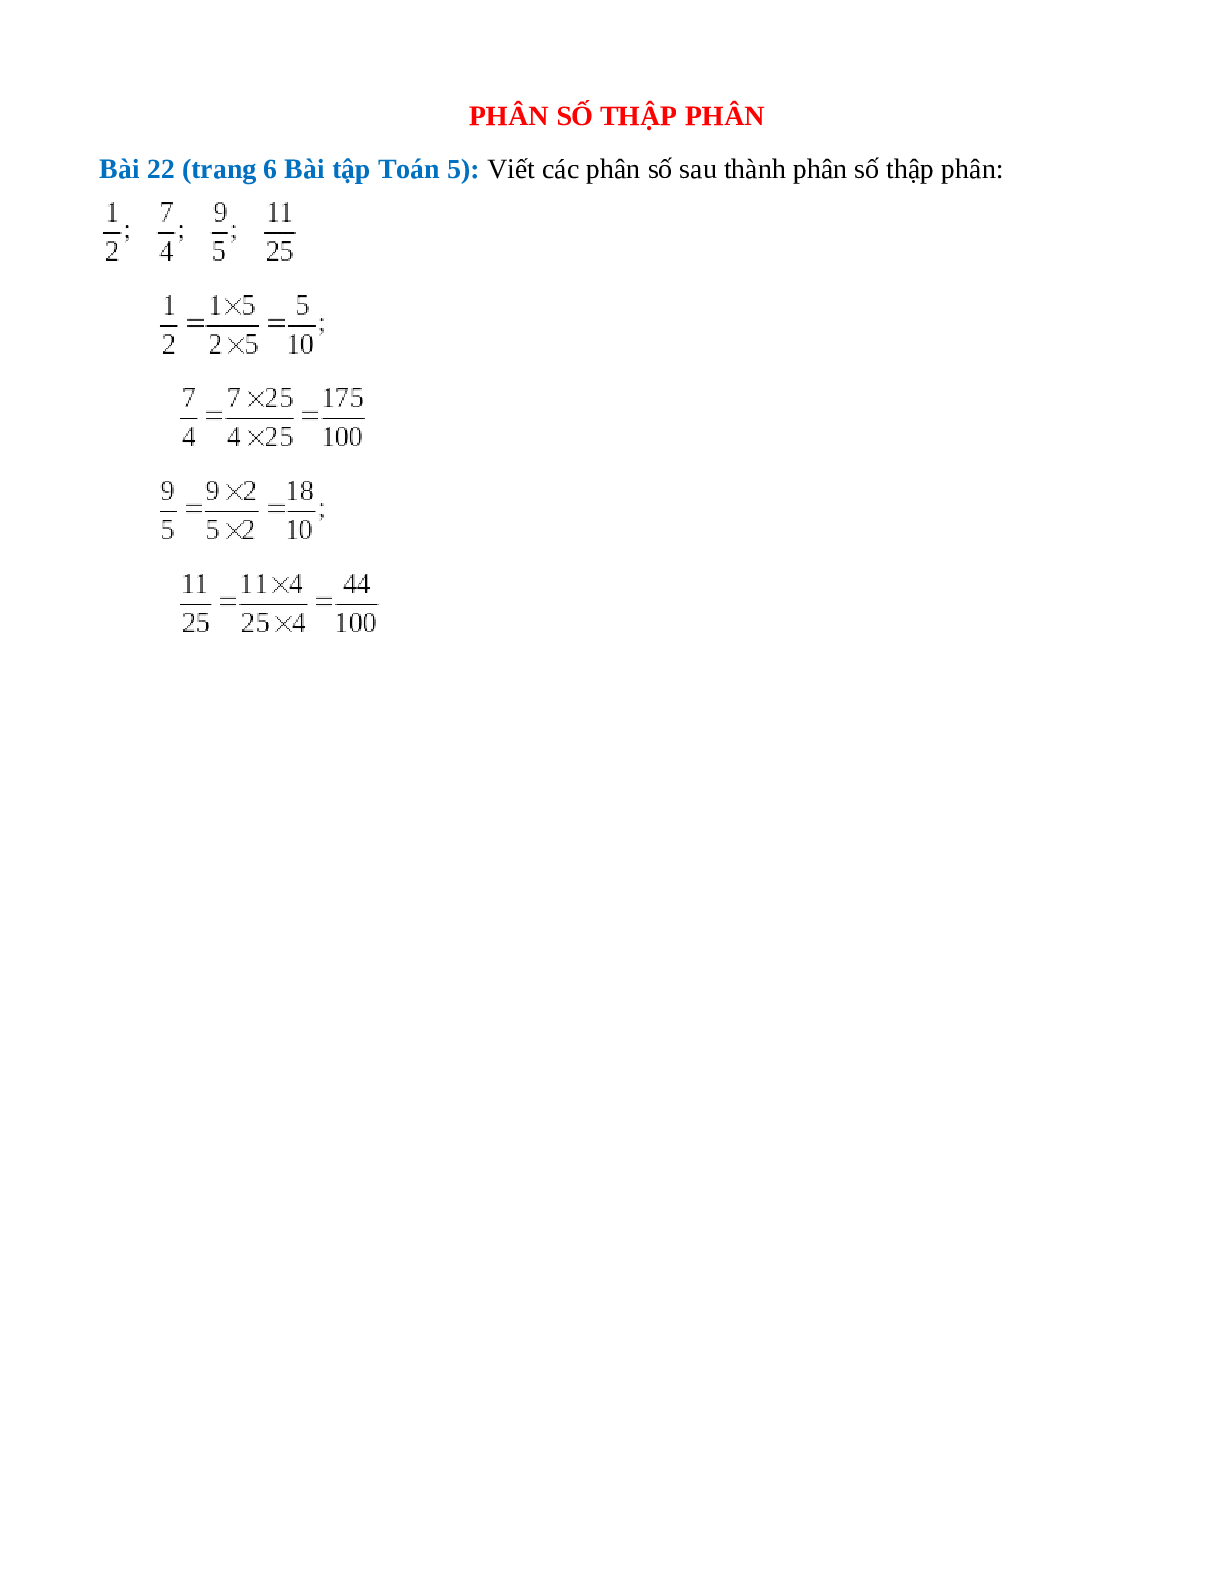 Viết các phân số sau thành phân số thập phân:1/2; 7/4; 9/5; 11/25 (trang 1)